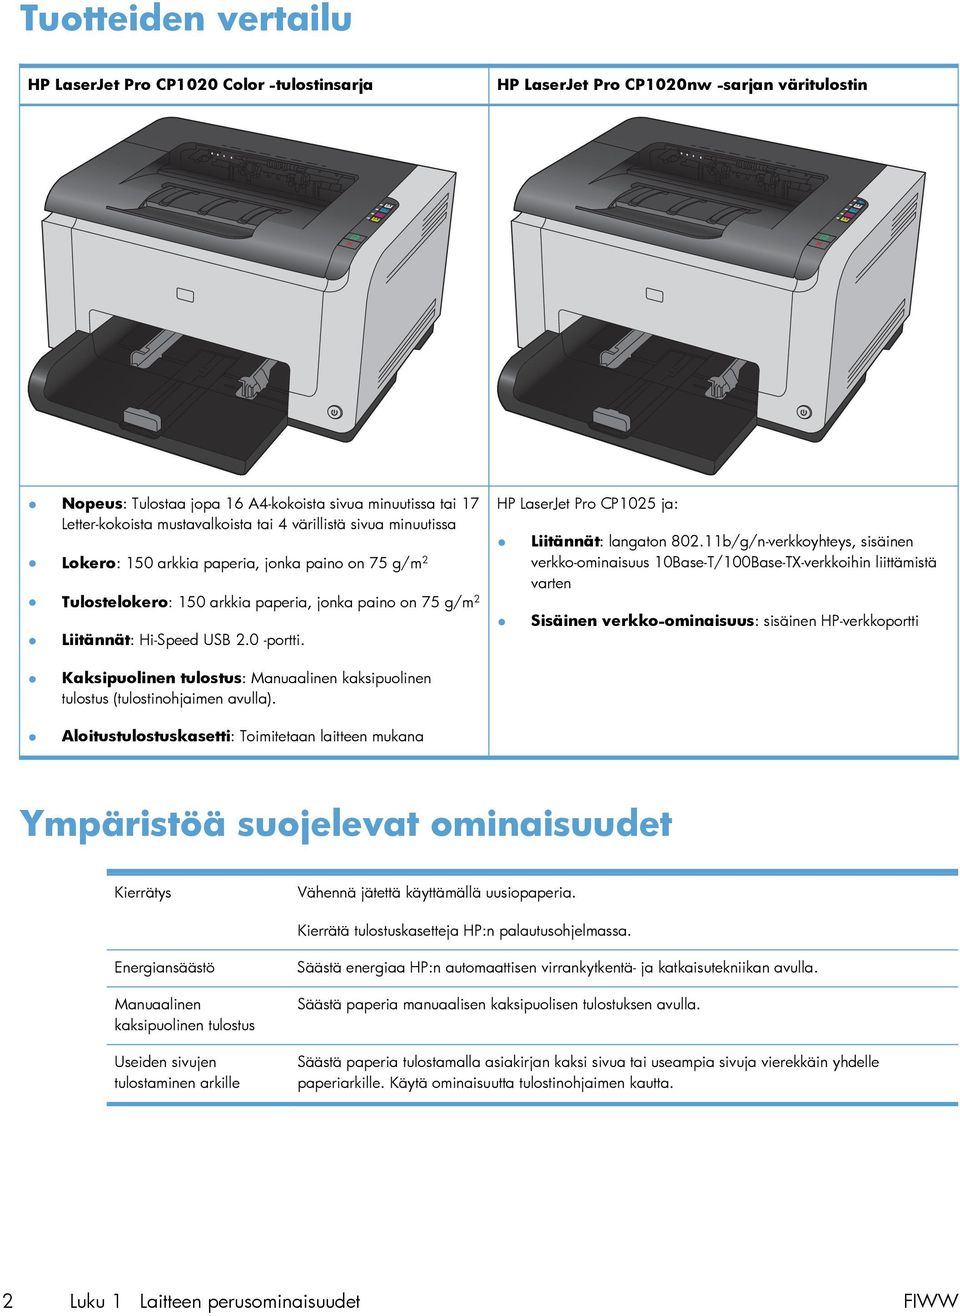 HP LaserJet Pro CP1025 ja: Liitännät: langaton 802.